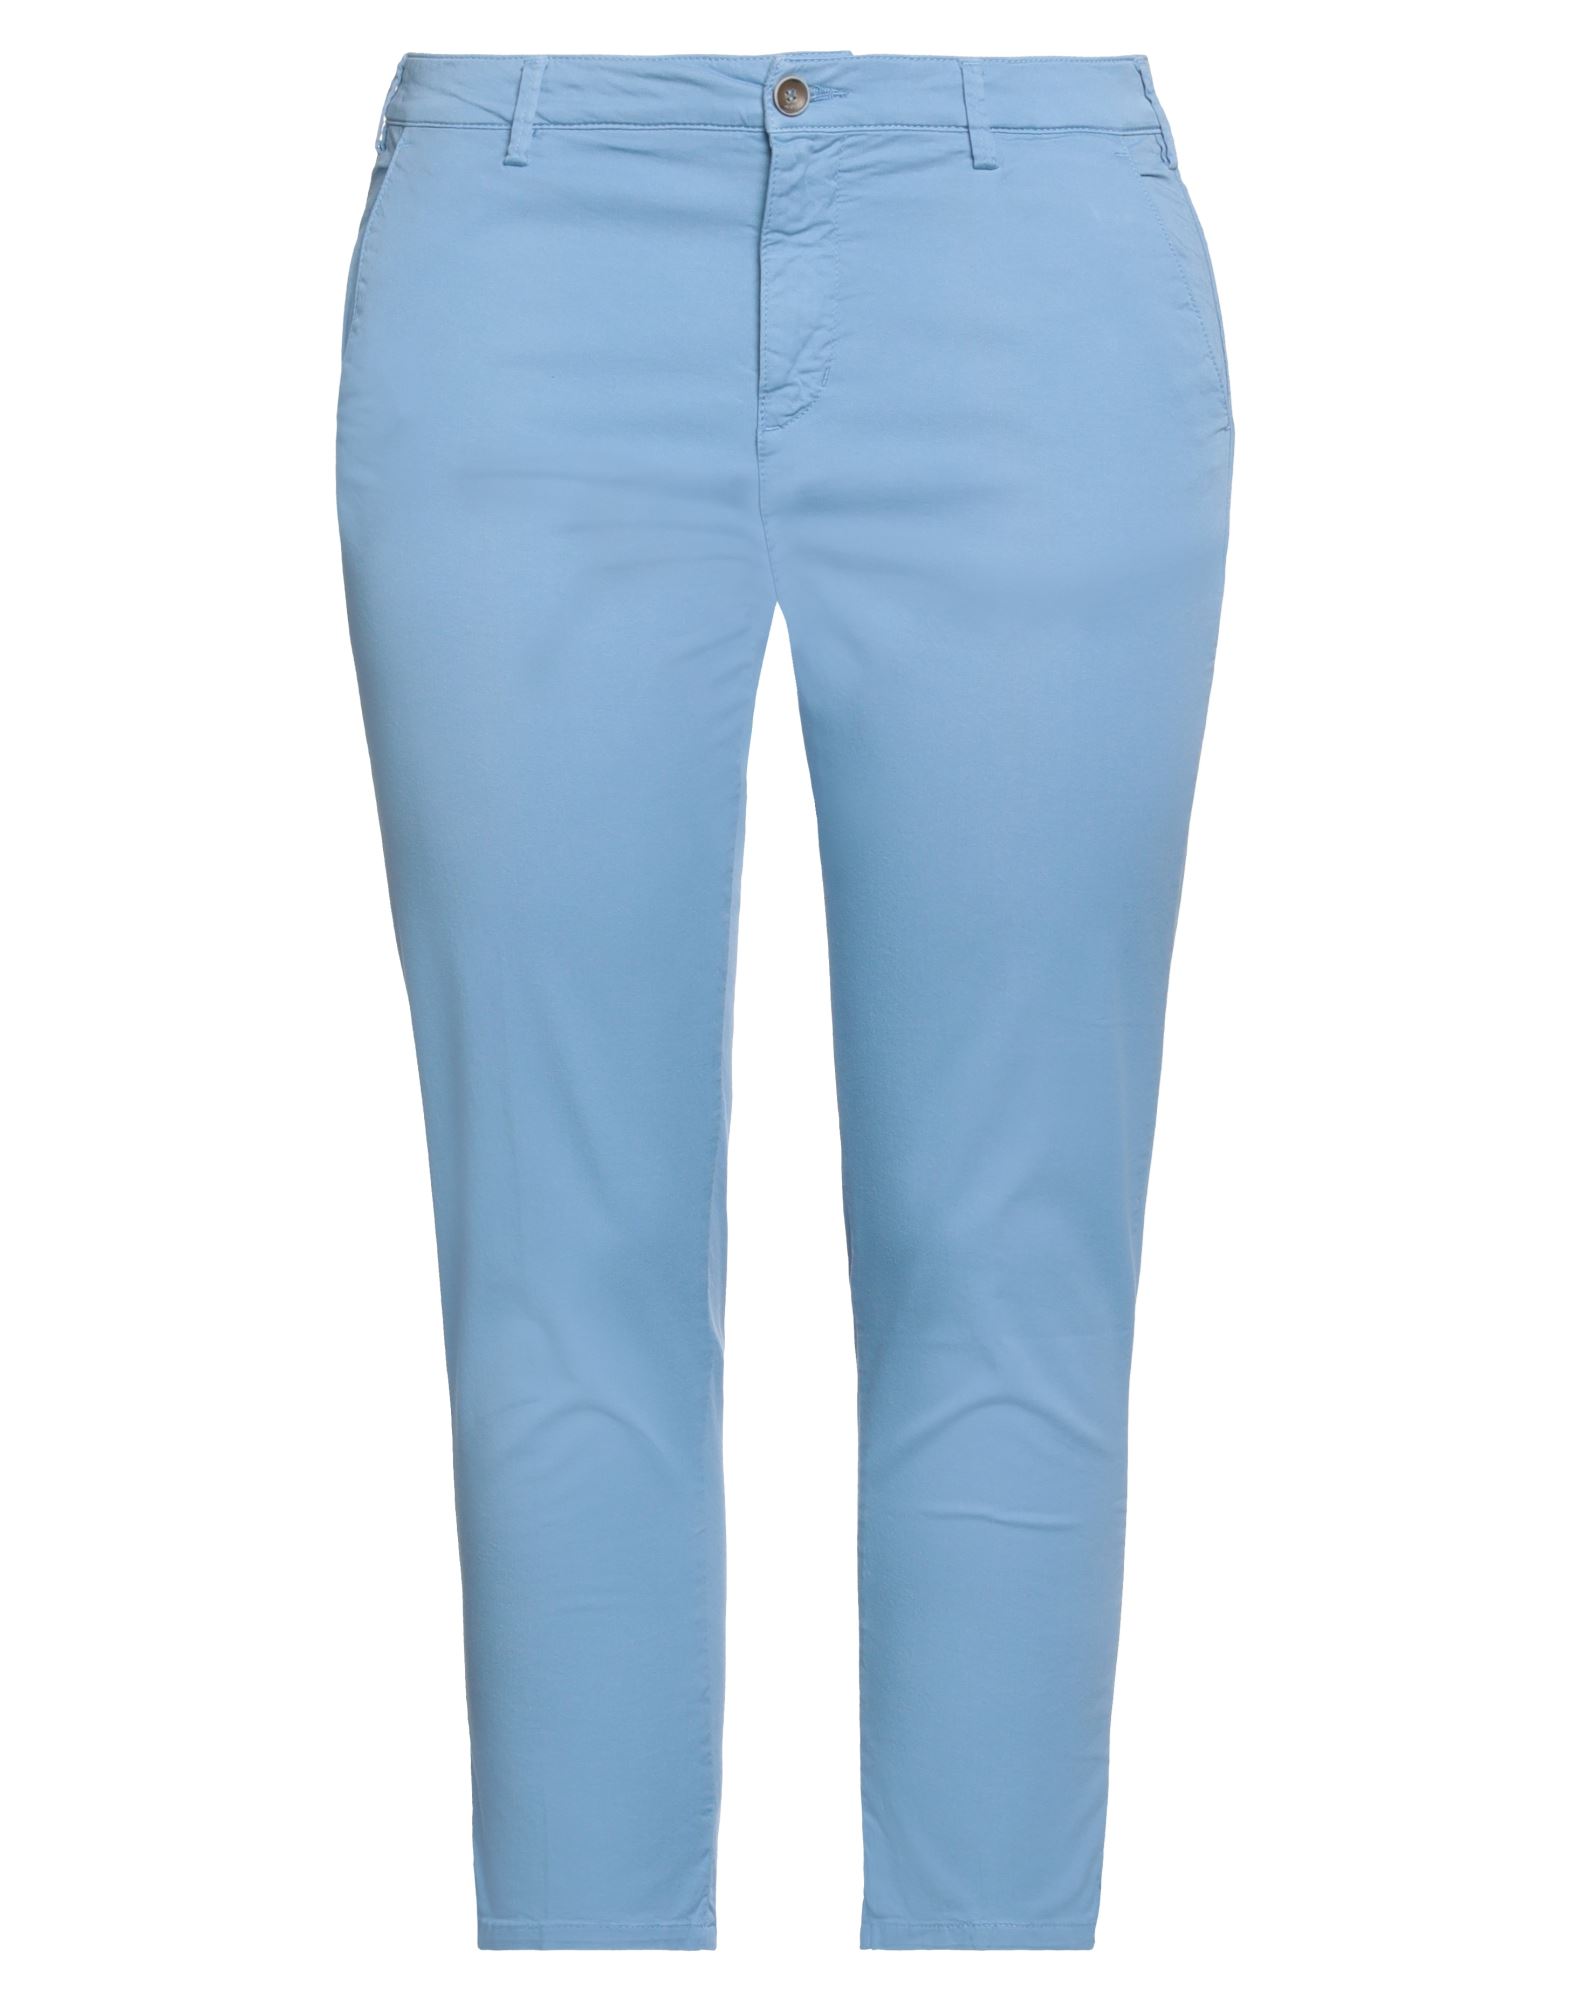 Shop 40weft Woman Cropped Pants Sky Blue Size 4 Cotton, Elastane